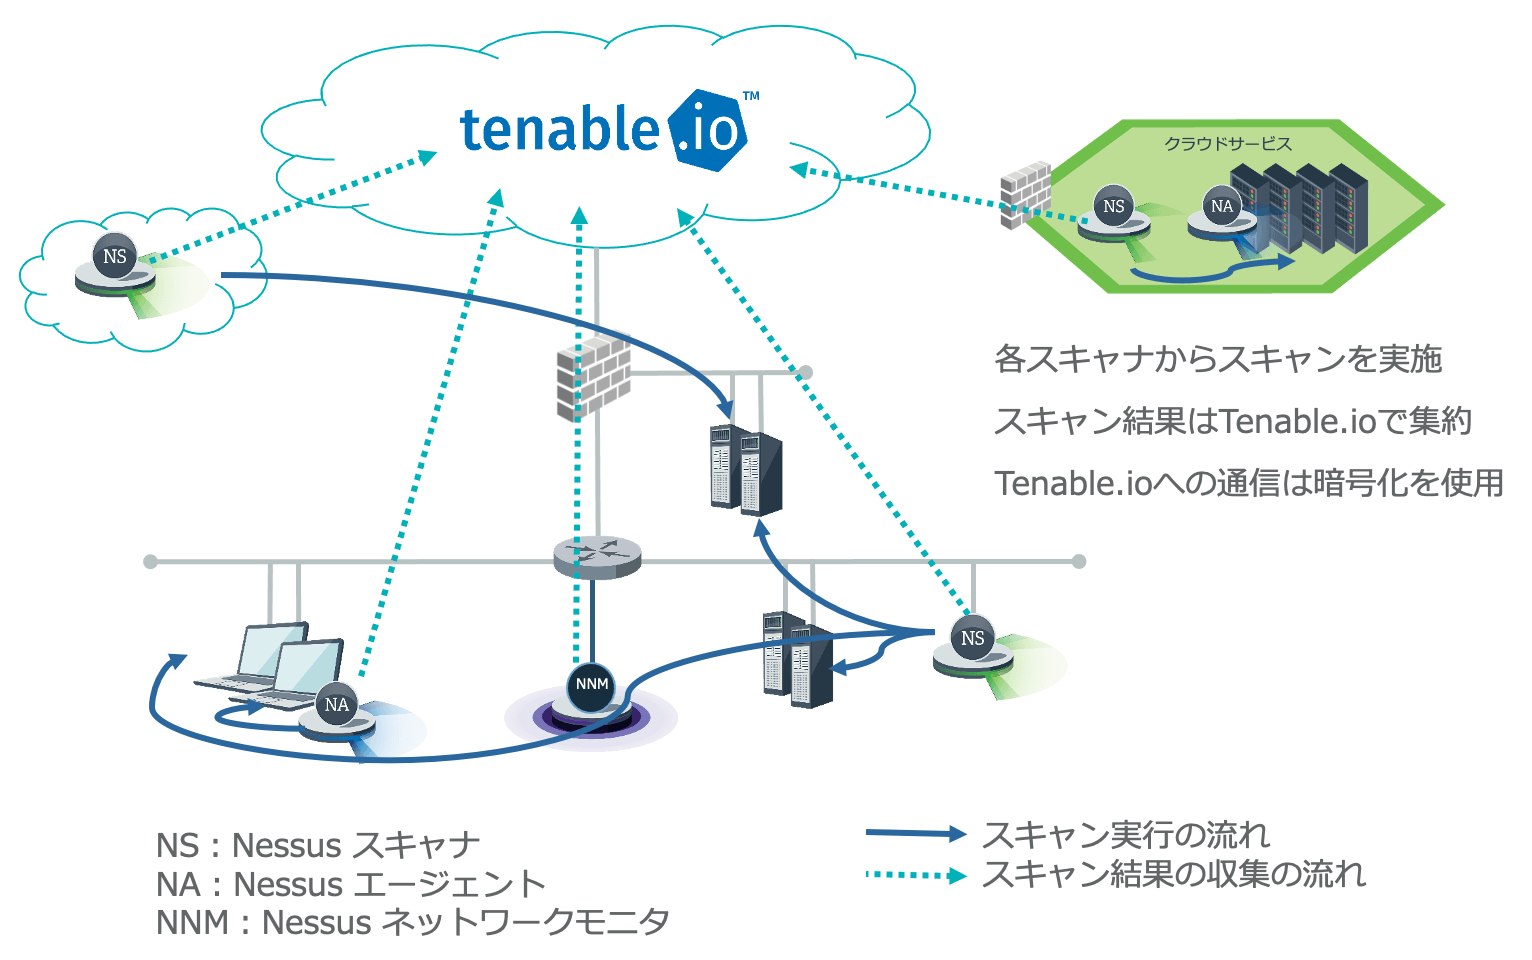 Arrangement of each scanner in Tenable.io